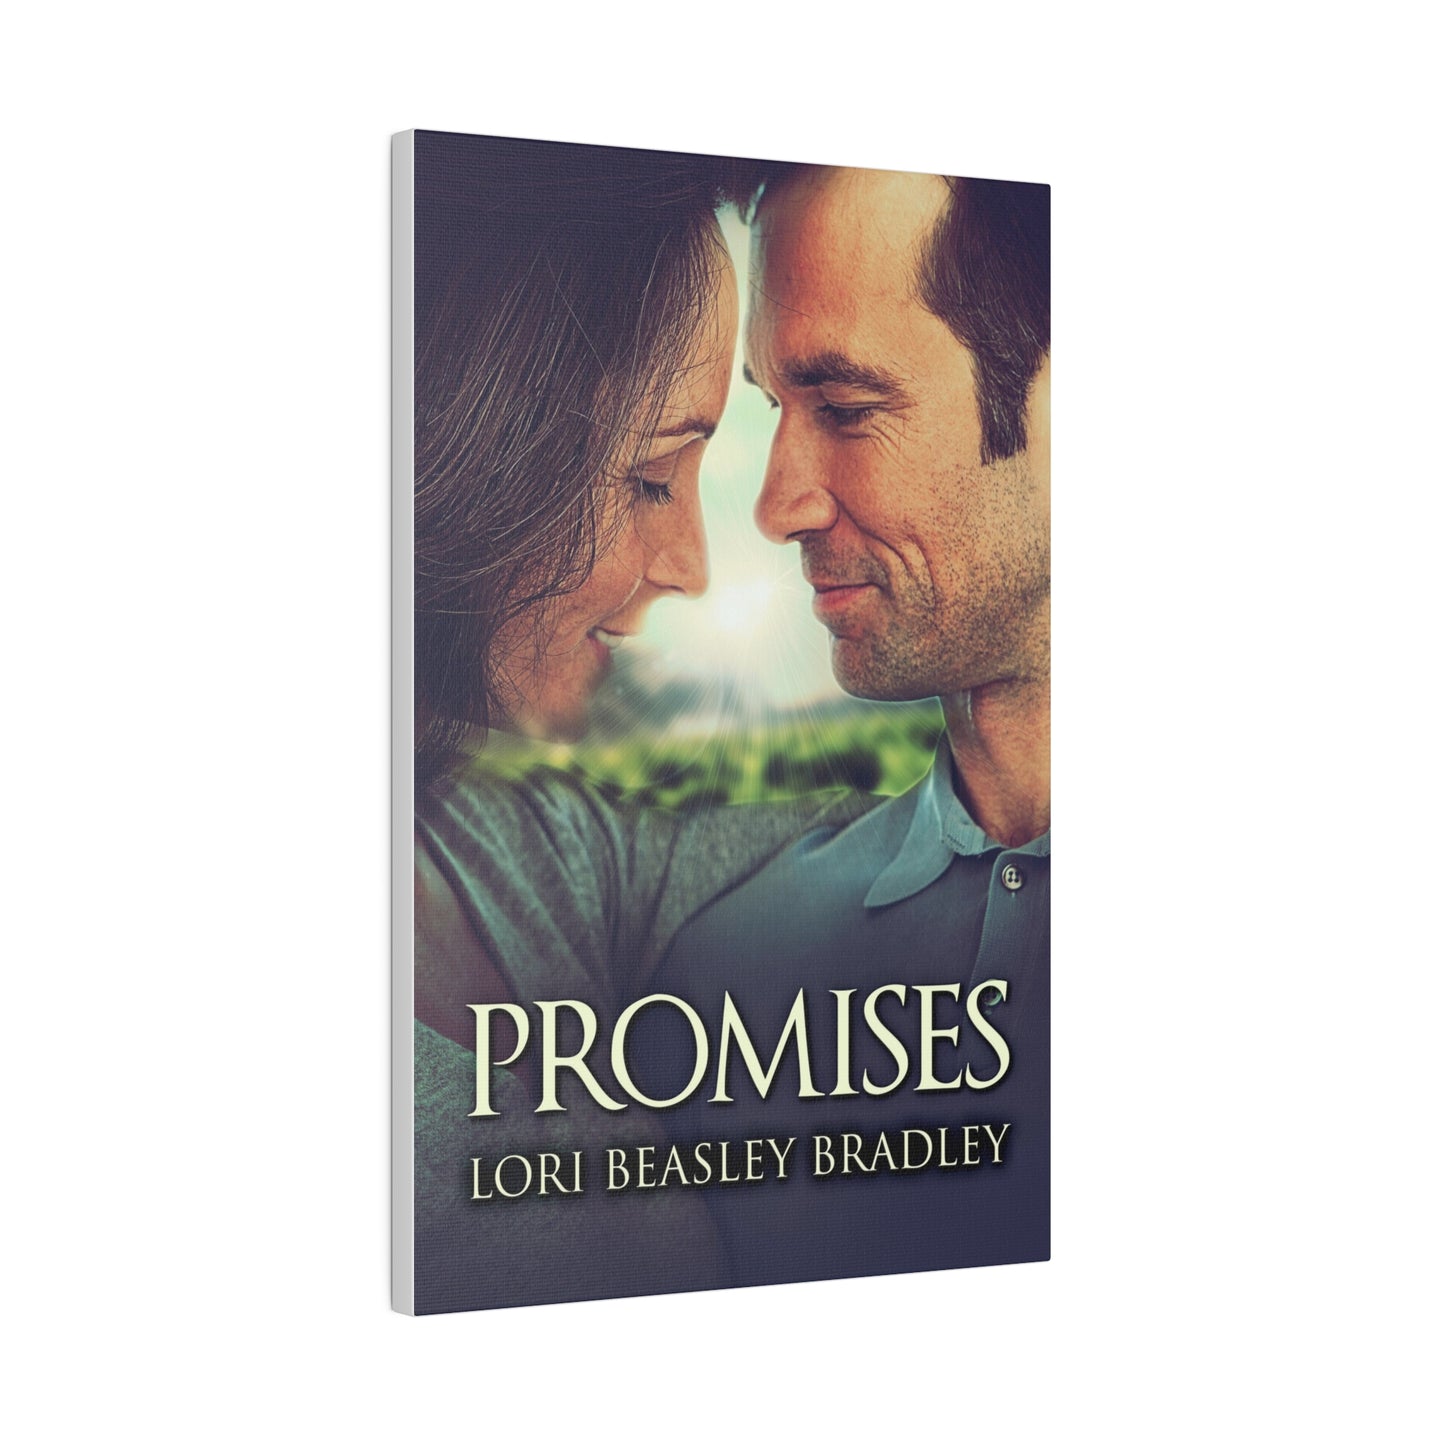 Promises - Canvas